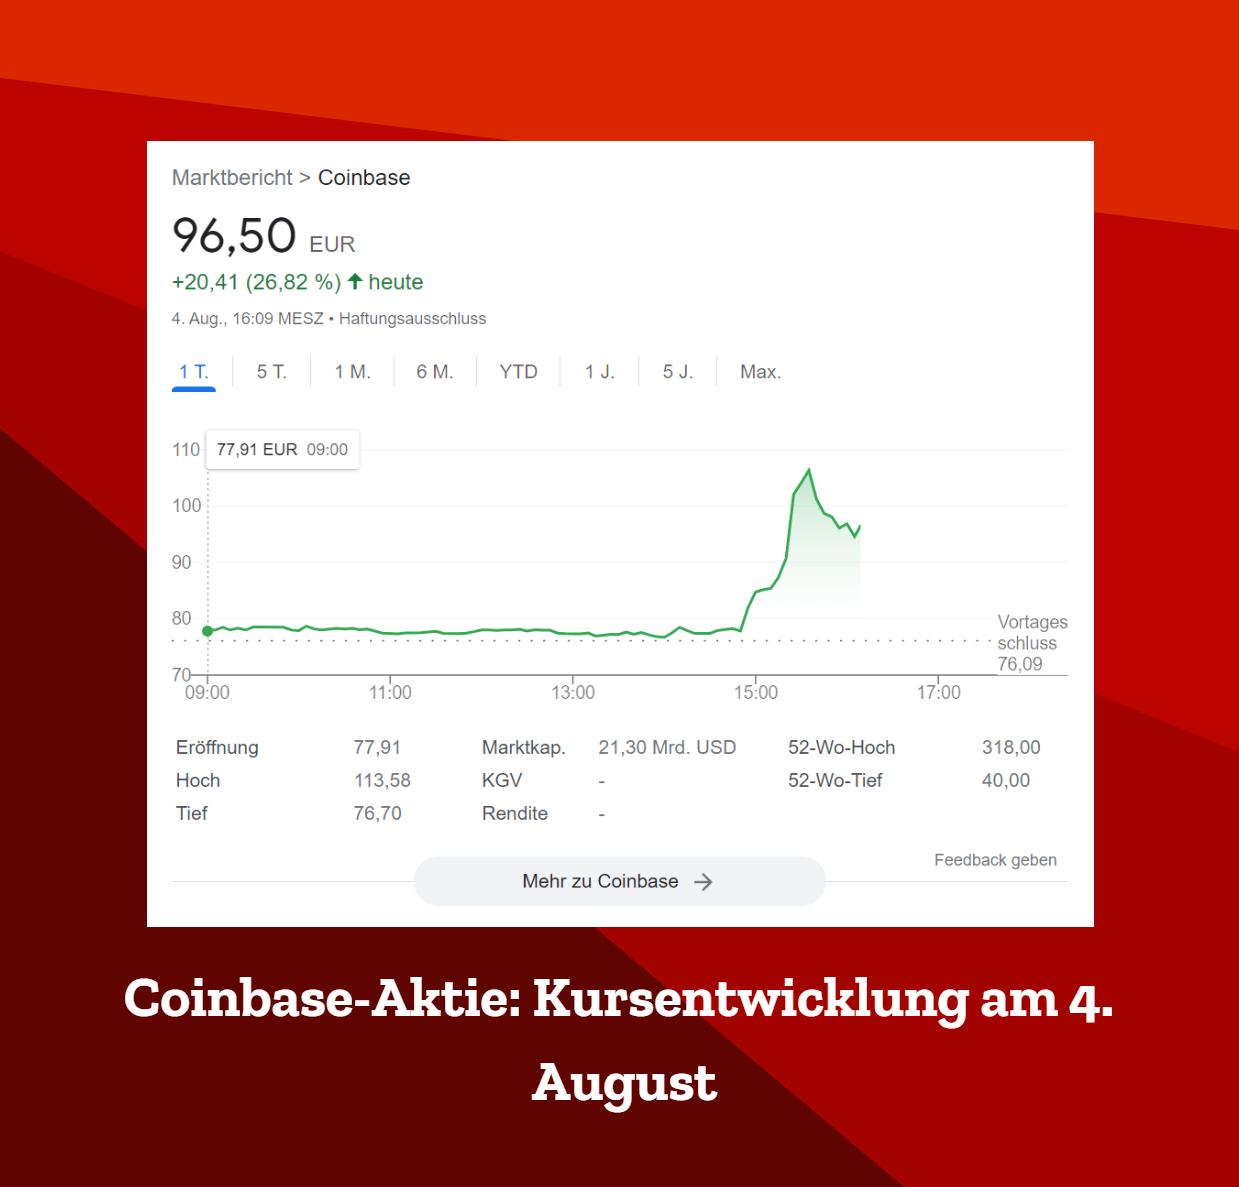 Coinbase Aktie